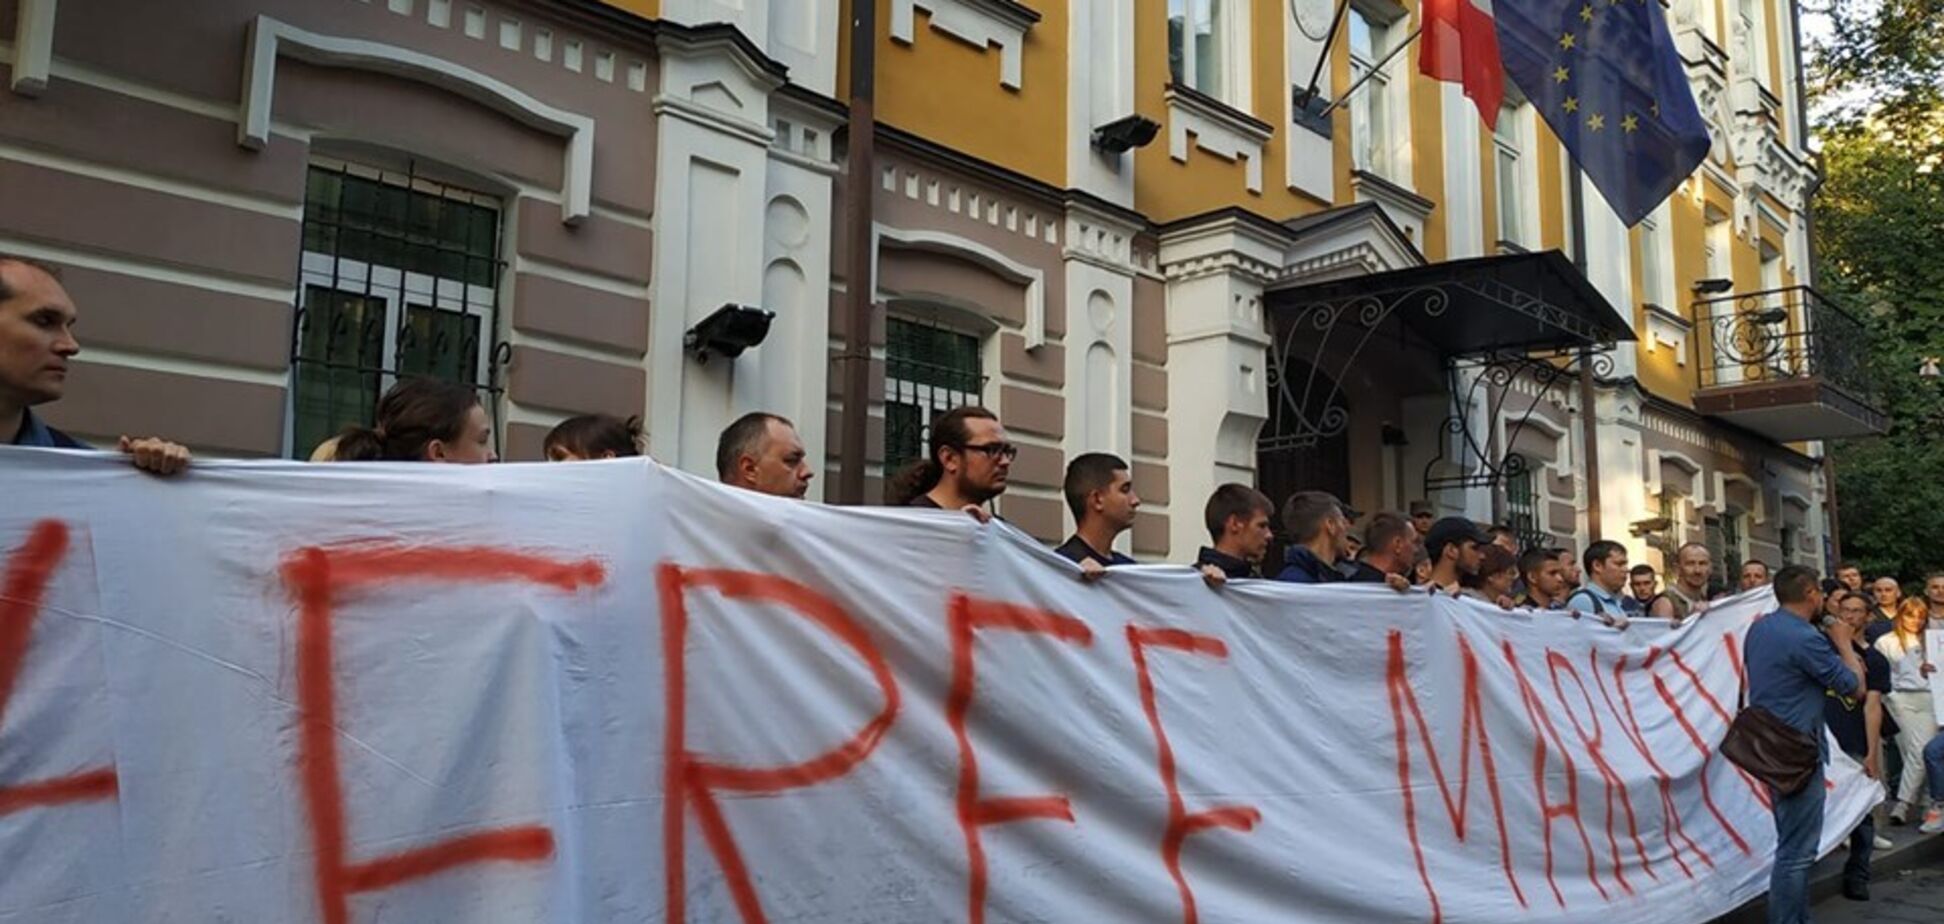 Протест под посольством Италии